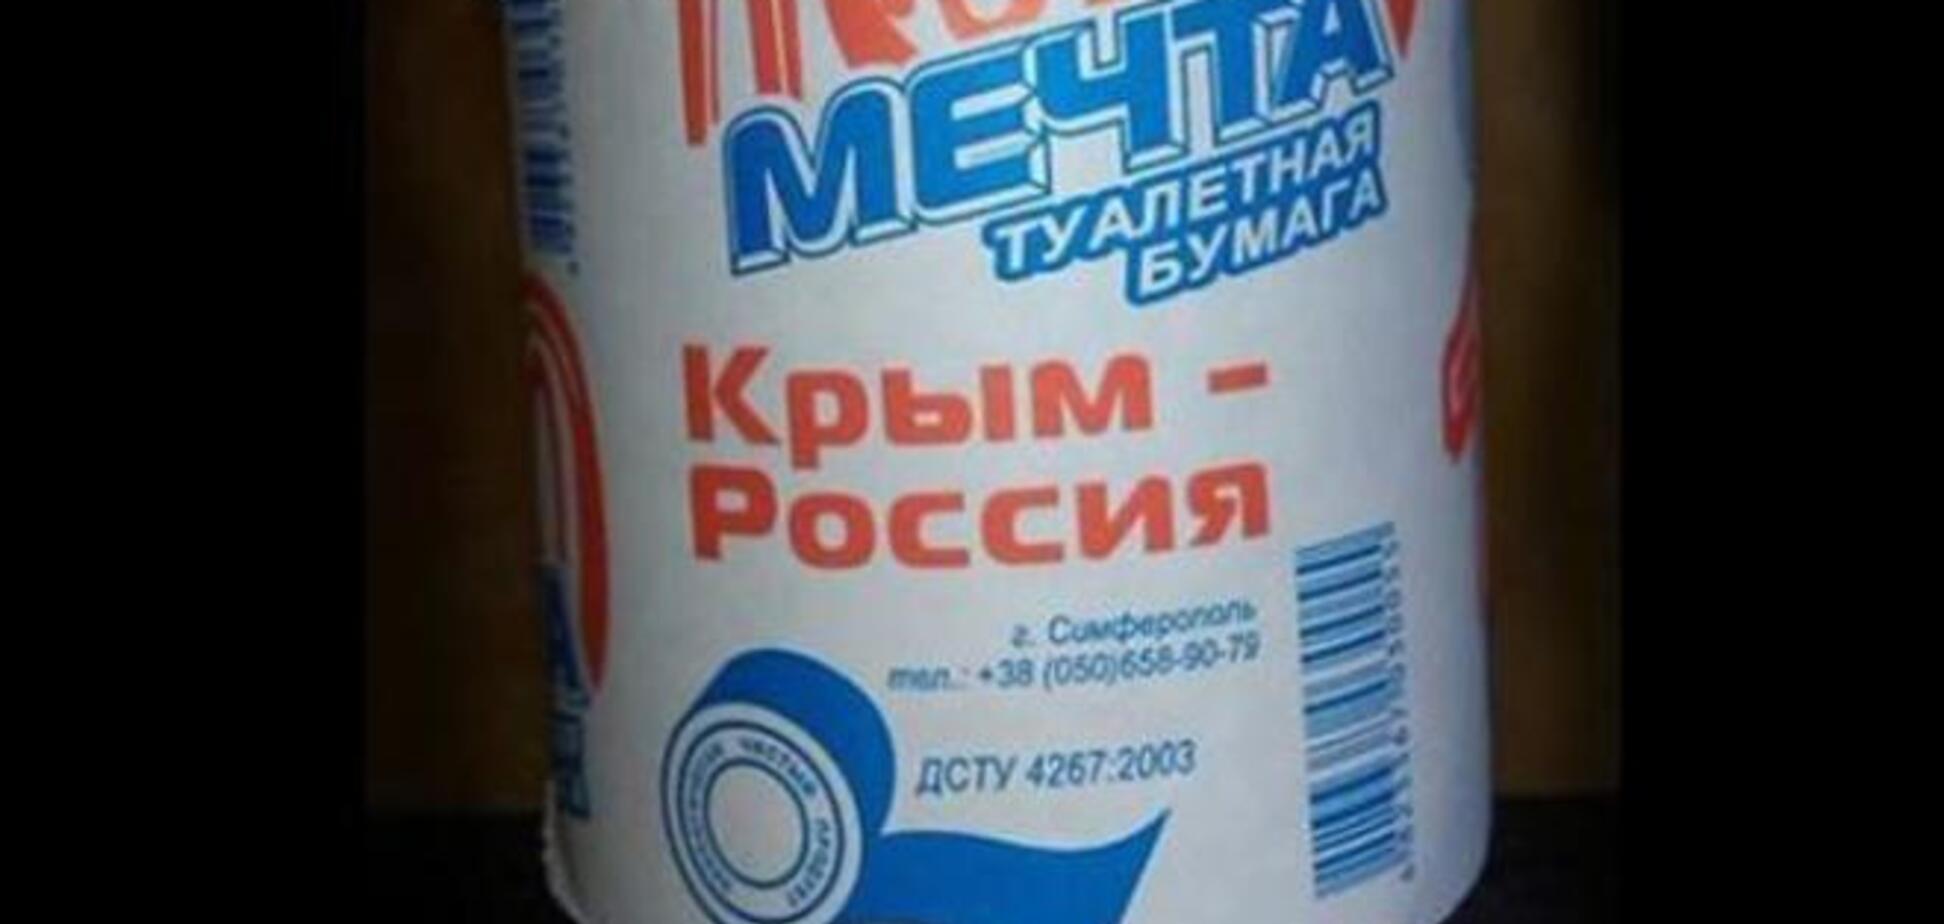 В Крыму выпустили туалетную бумагу 'Мечта': 'Крым - Россия'